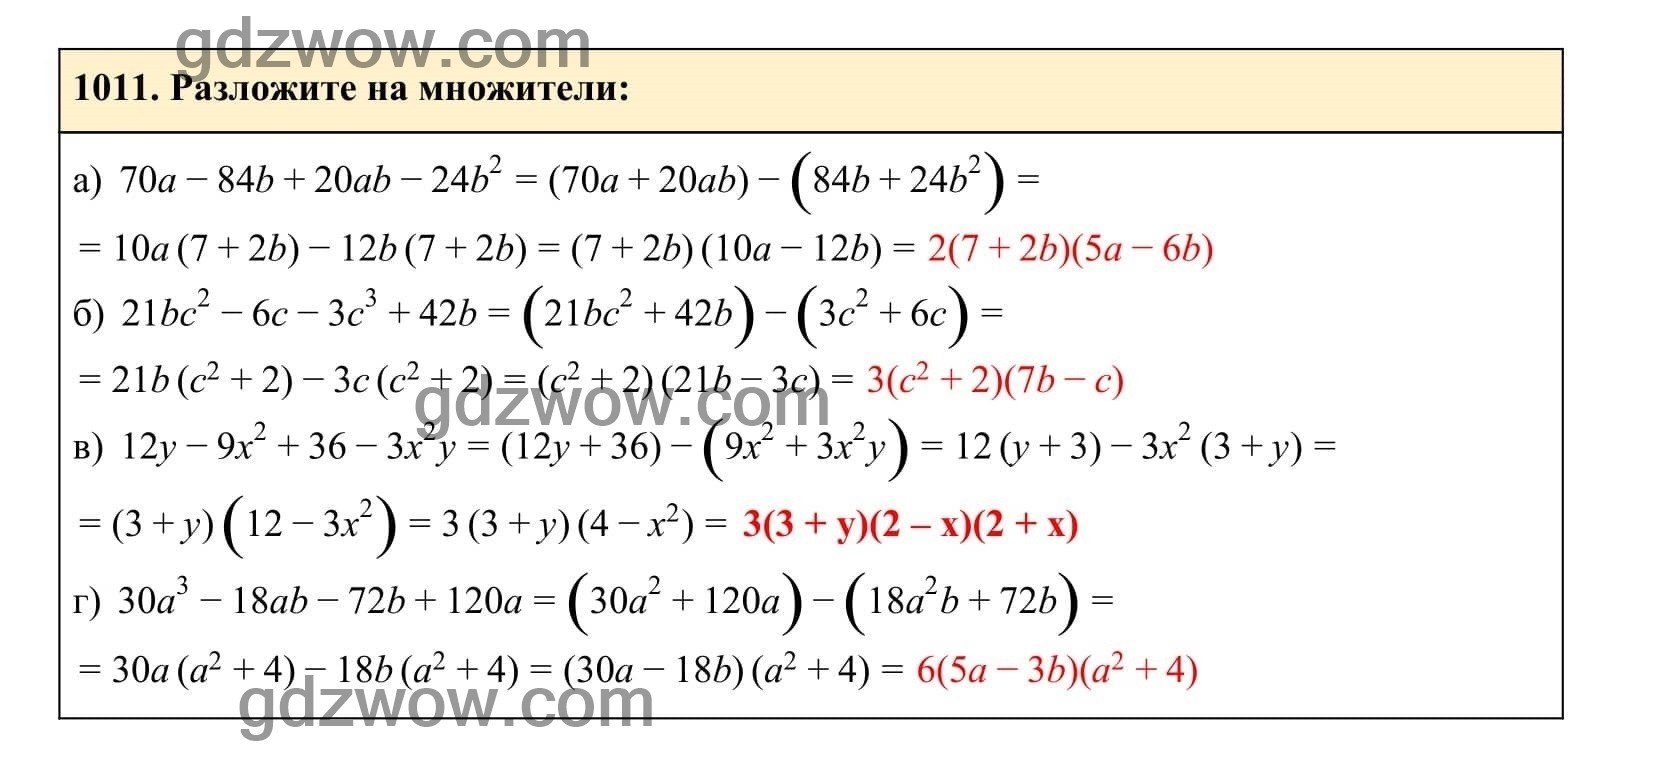 Упражнение 1011 - ГДЗ по Алгебре 7 класс Учебник Макарычев (решебник) - GDZwow